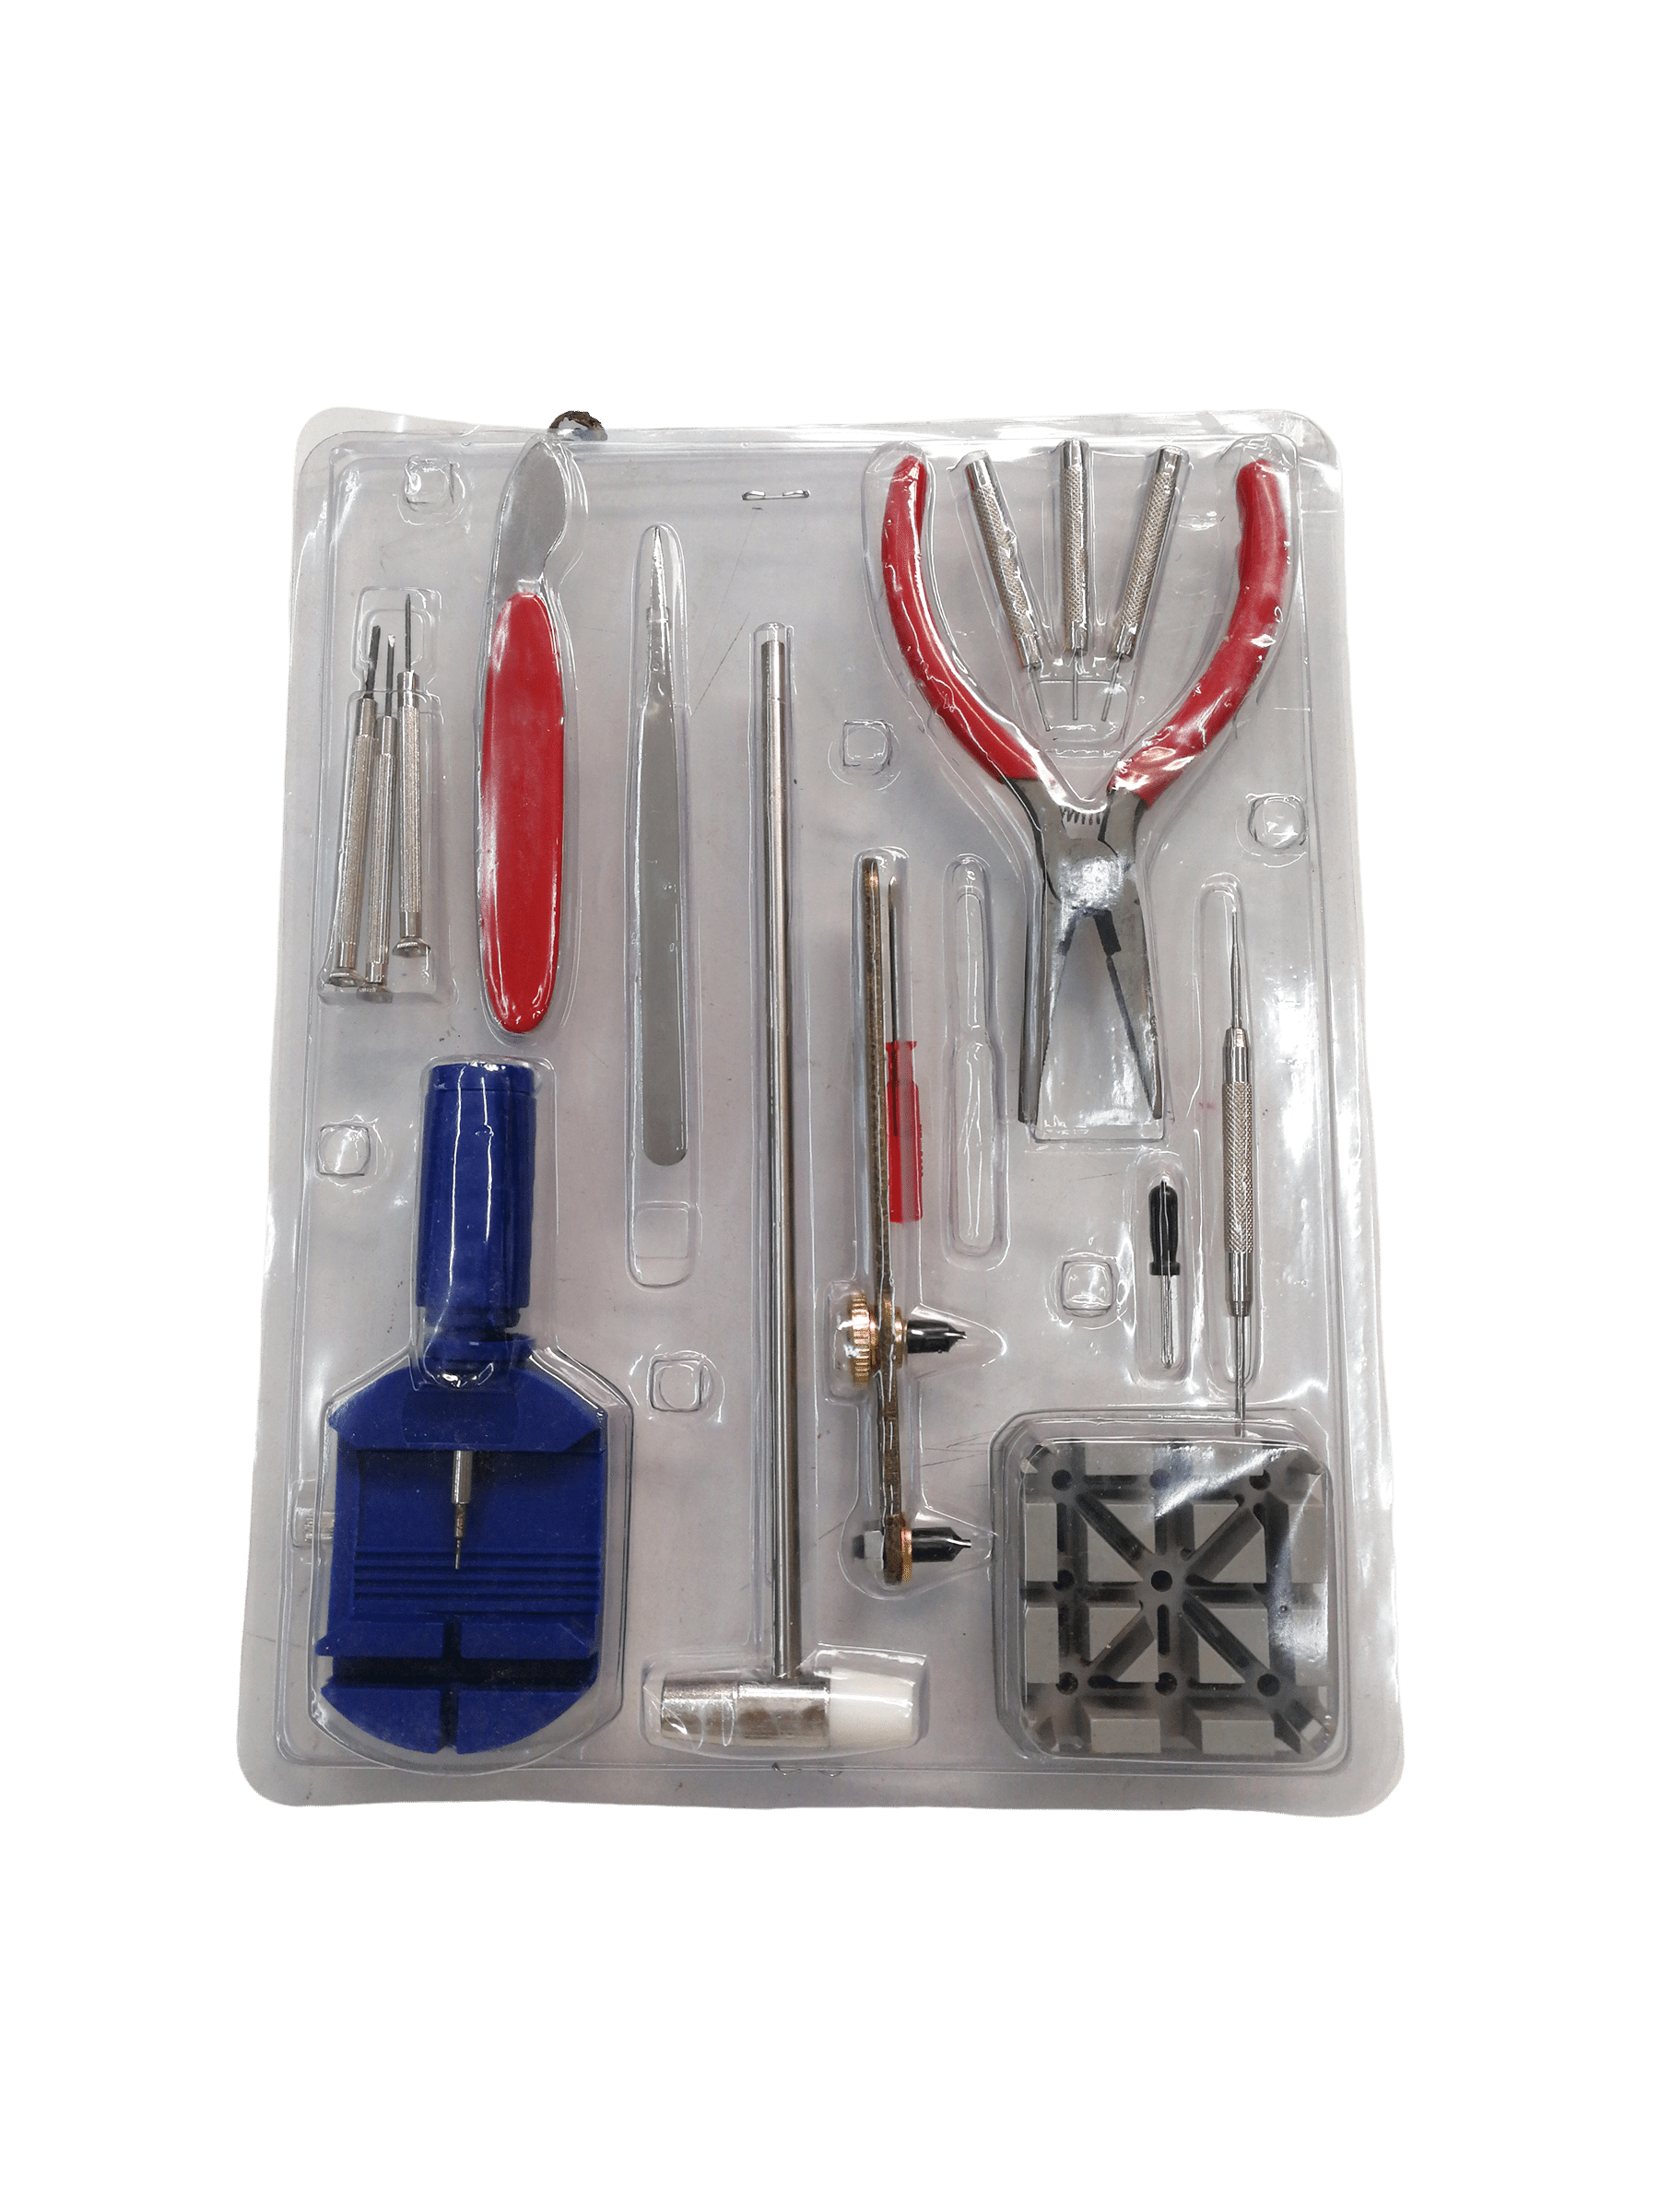 Kit d'outils d'horlogerie